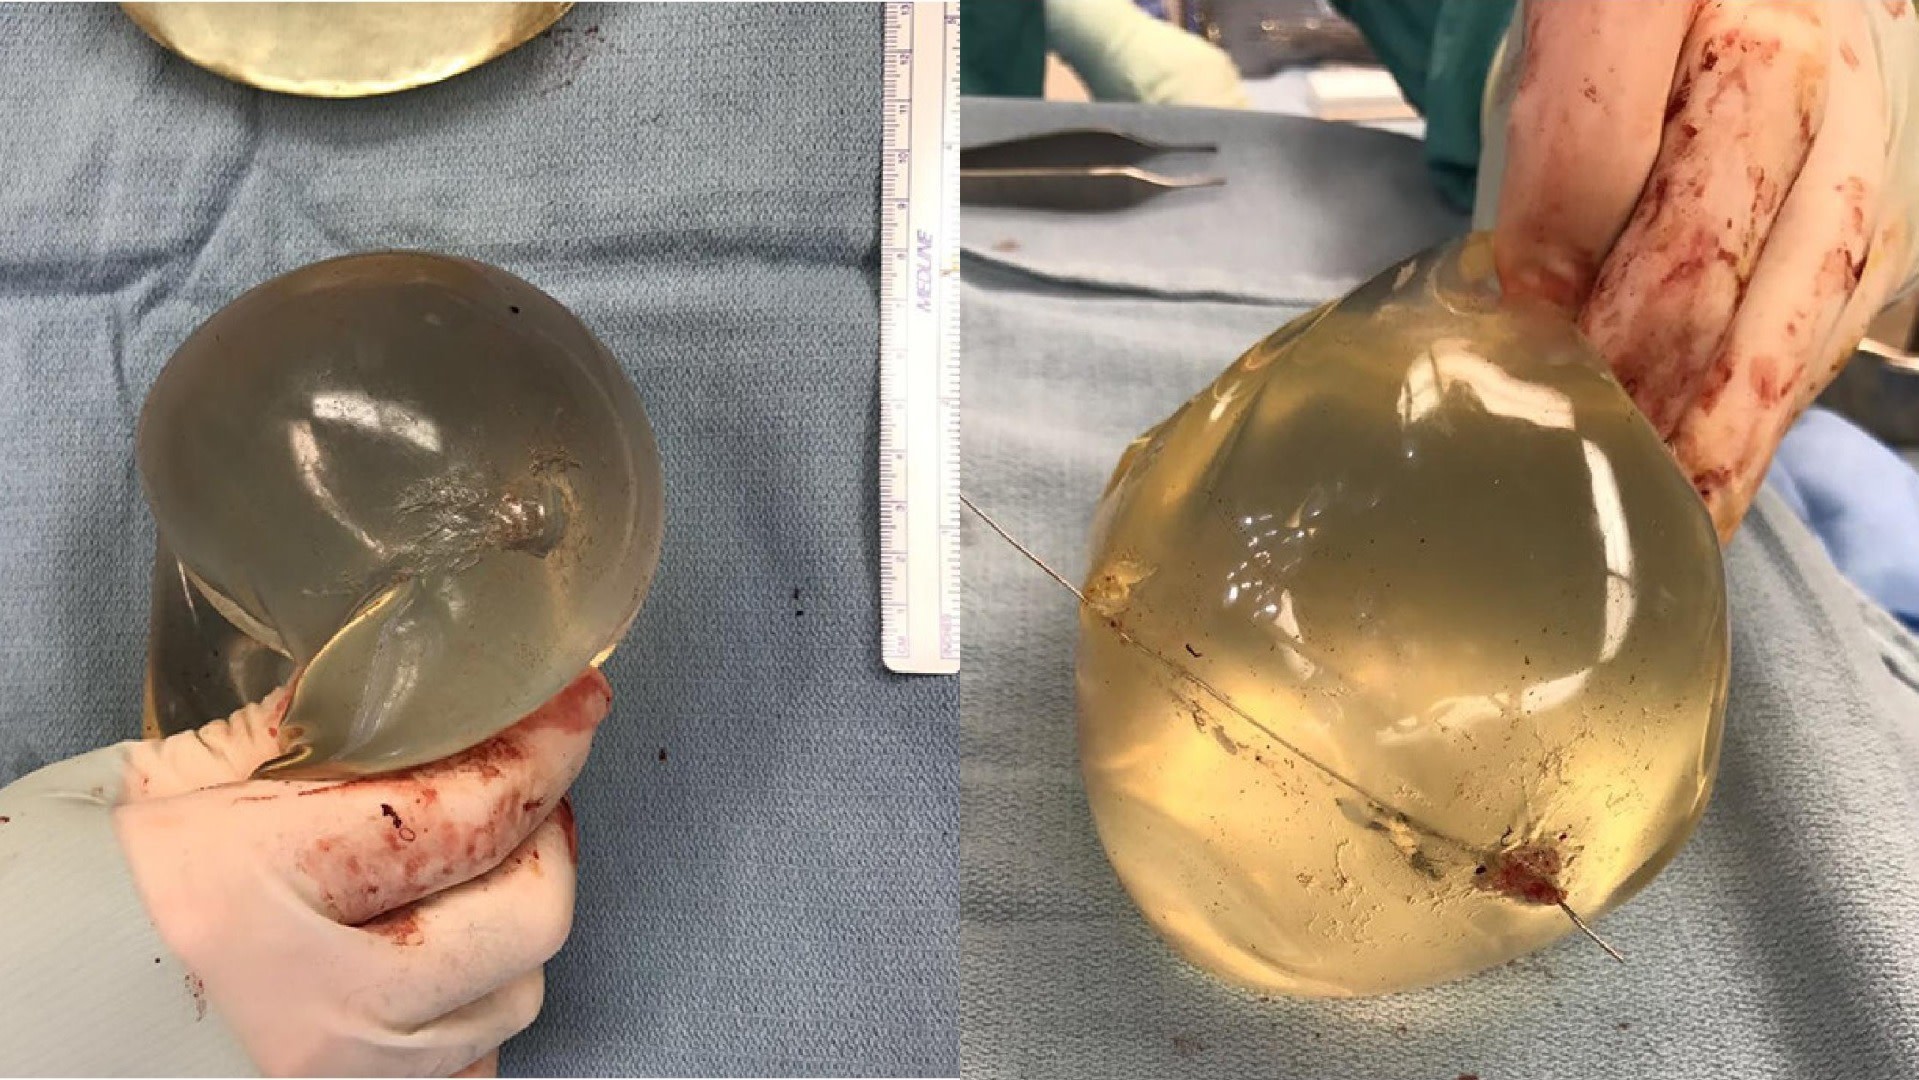 Implantes de silicone da mulher atingida. Repare que o trajeto da bala pode ser visto em cada um deles. Crédito: McEvenue, et al (Plastic Surgery Case Studies (CC BY NC 4.0)